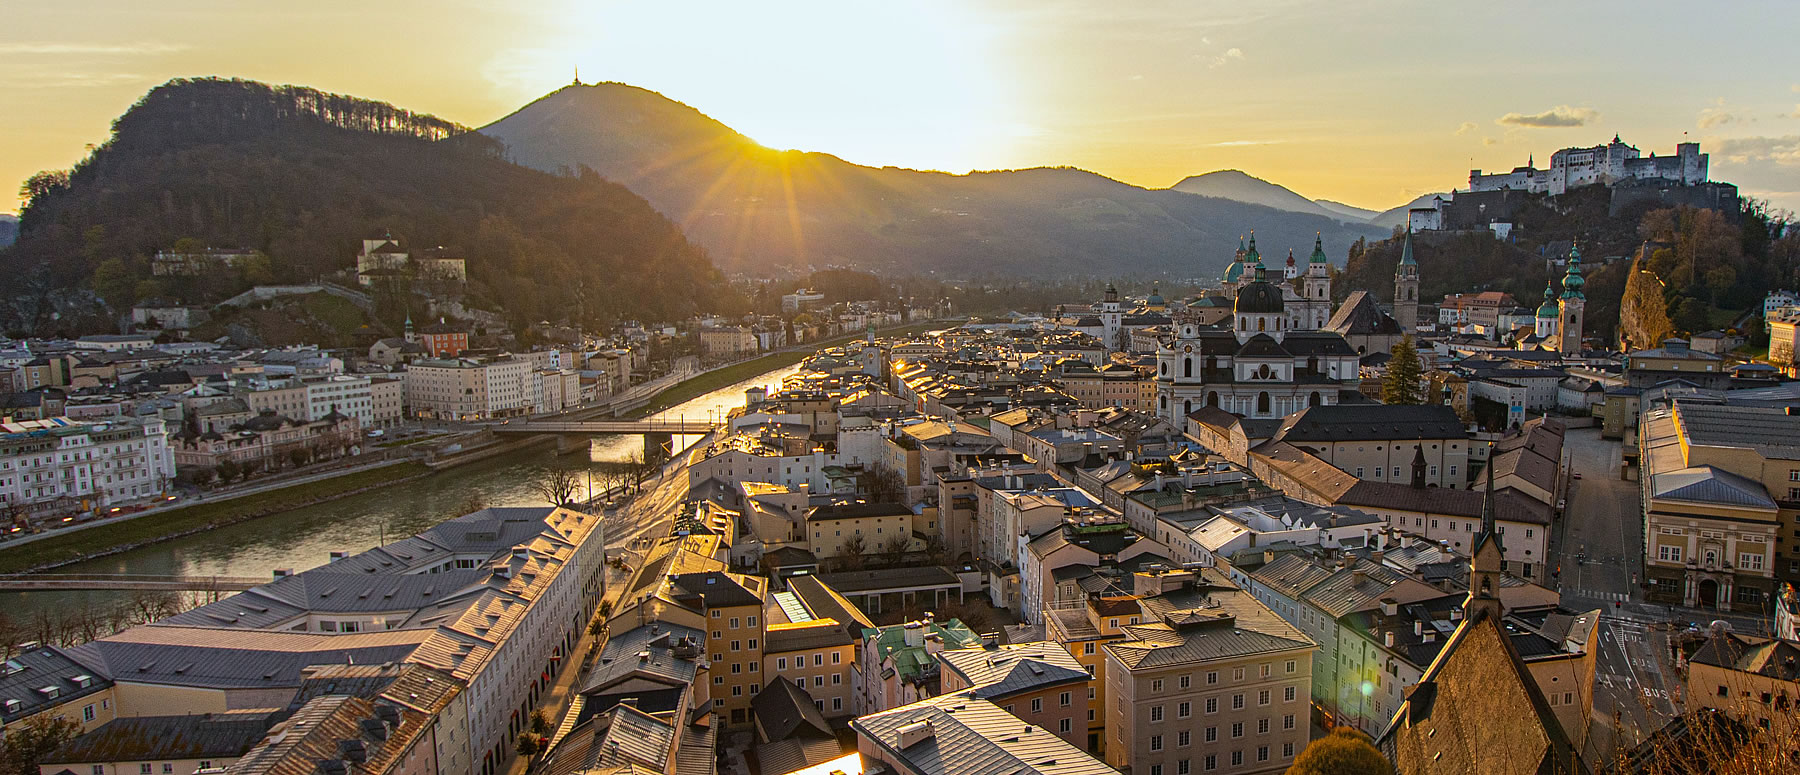 Die Altstadt von Salzburg im Morgenlicht